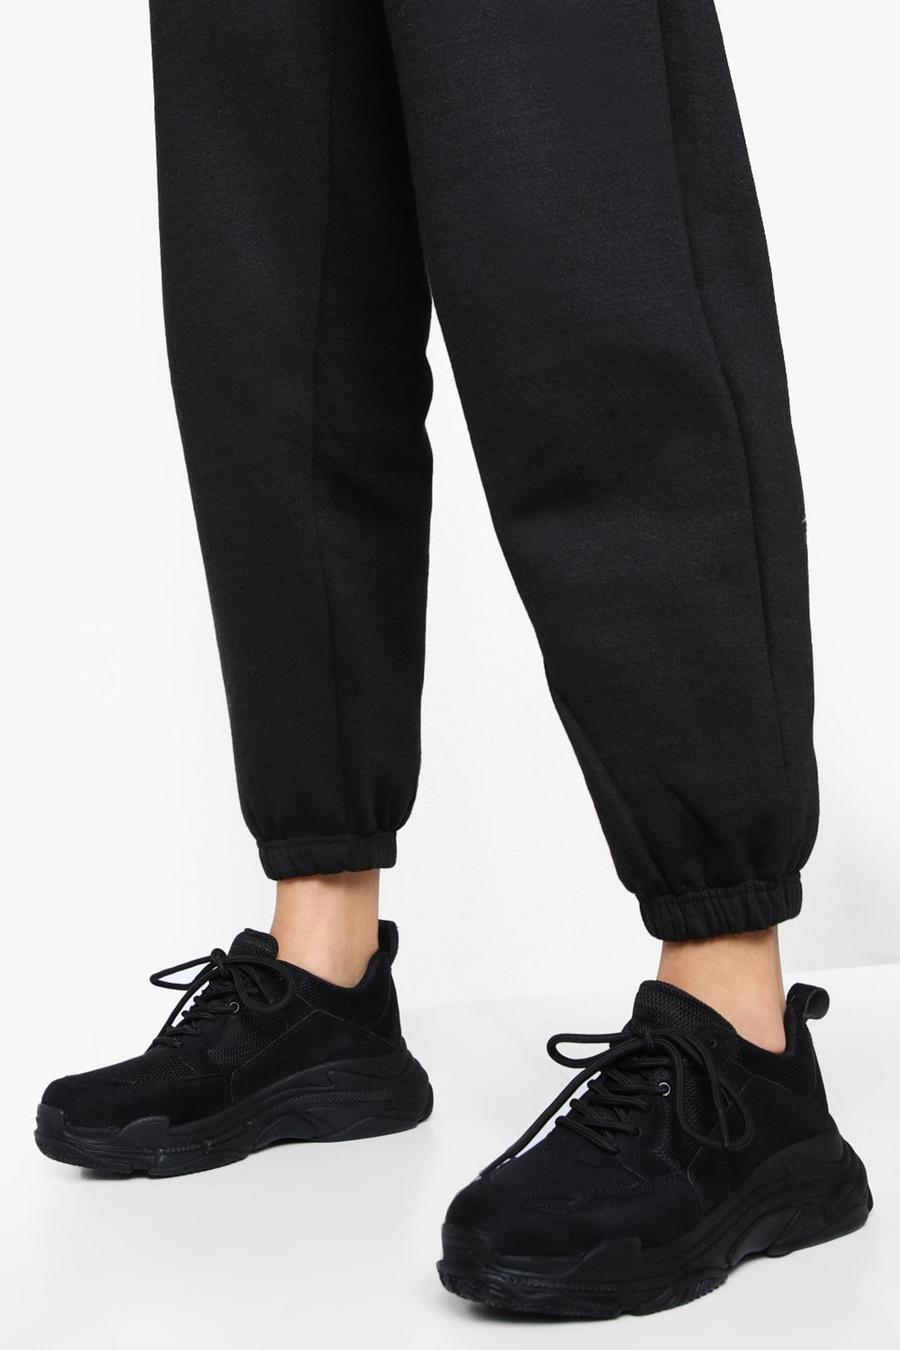 שחור nero נעלי ספורט עם סוליה עבה ופאנל בצבעים מנוגדים